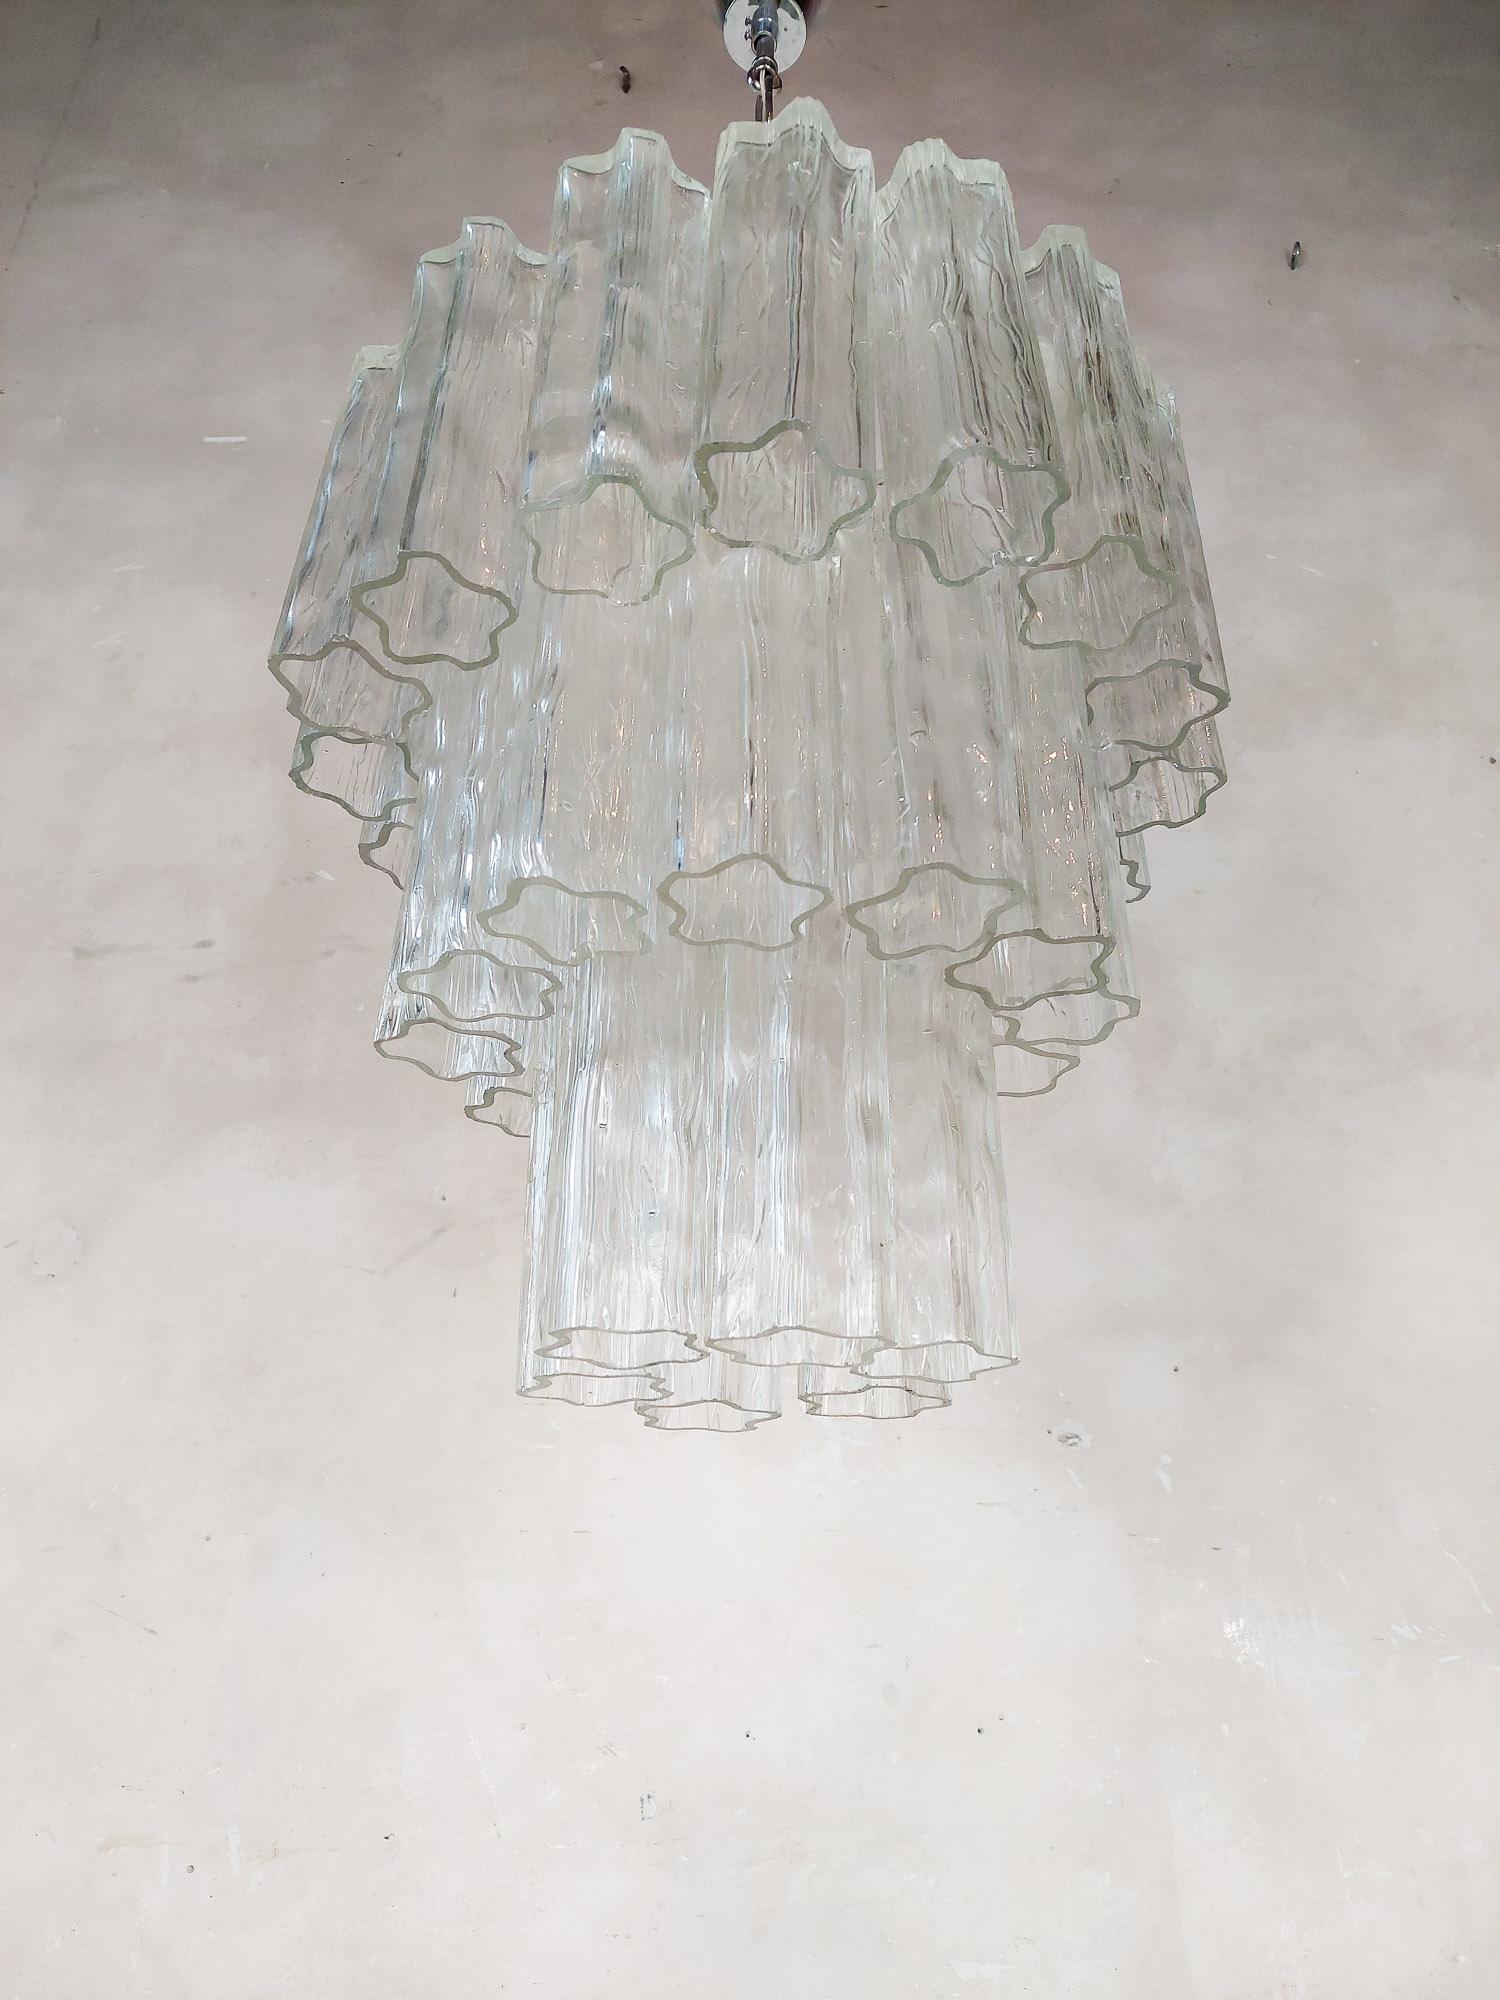 Italienischer Murano-Glaskronleuchter Tronchi von Venini, Mitte des Jahrhunderts.
Diese Hängelampe im Vintage-Stil besteht aus Elementen aus mundgeblasenen Glasröhren oder Eiszapfen, die wegen ihrer Form, die einer Rinde ähnelt, 